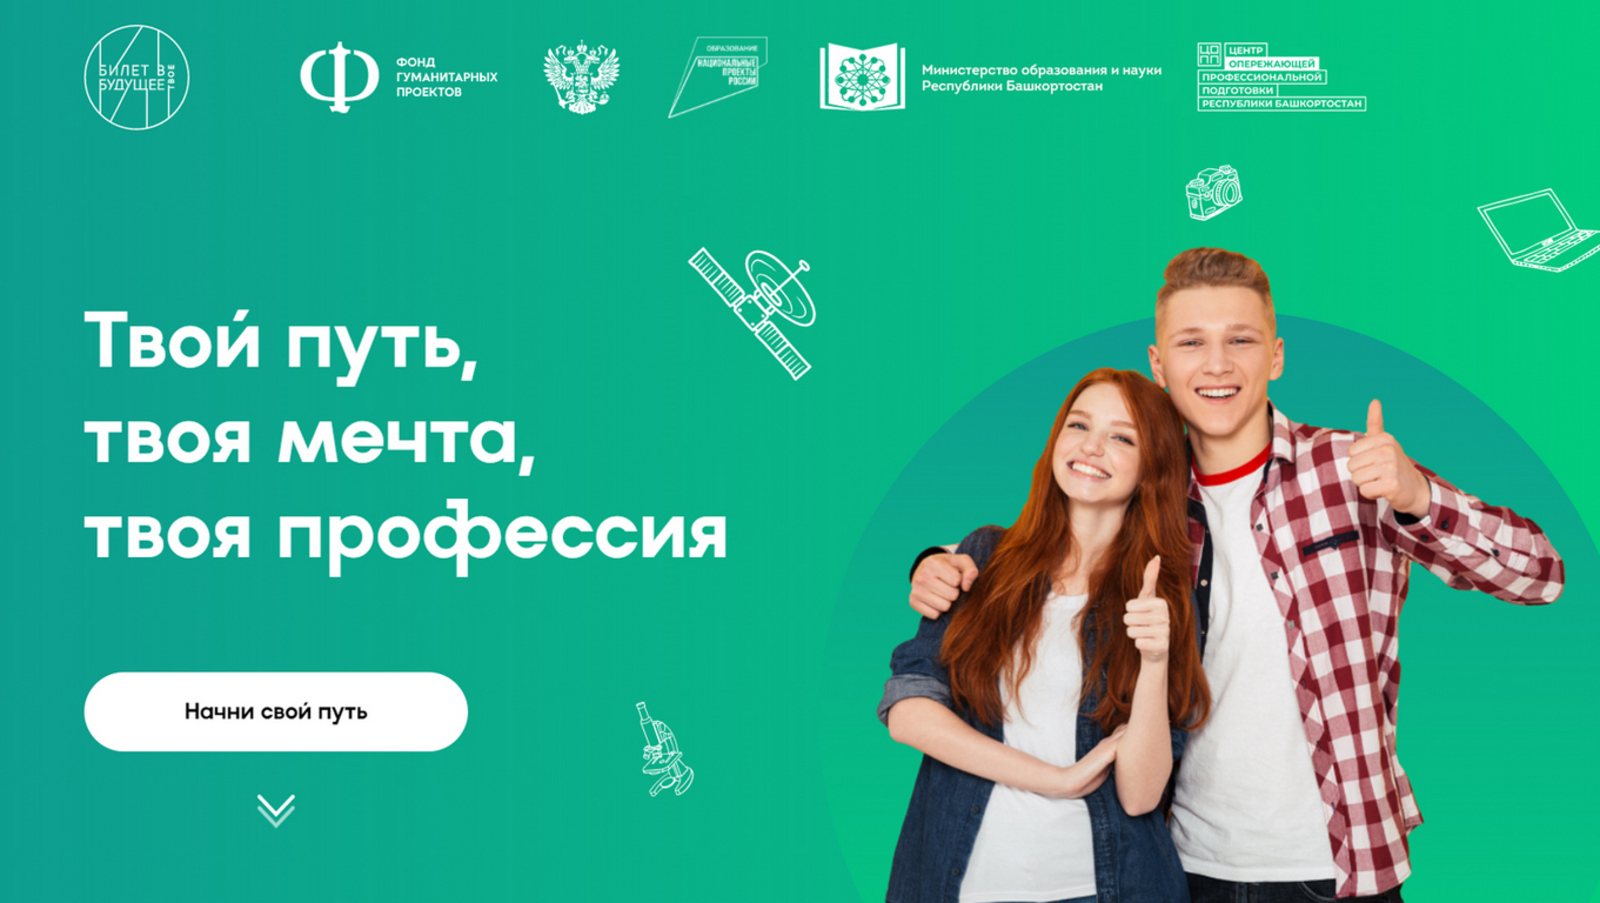 Новый сезон Всероссийского проекта «Билет в будущее».